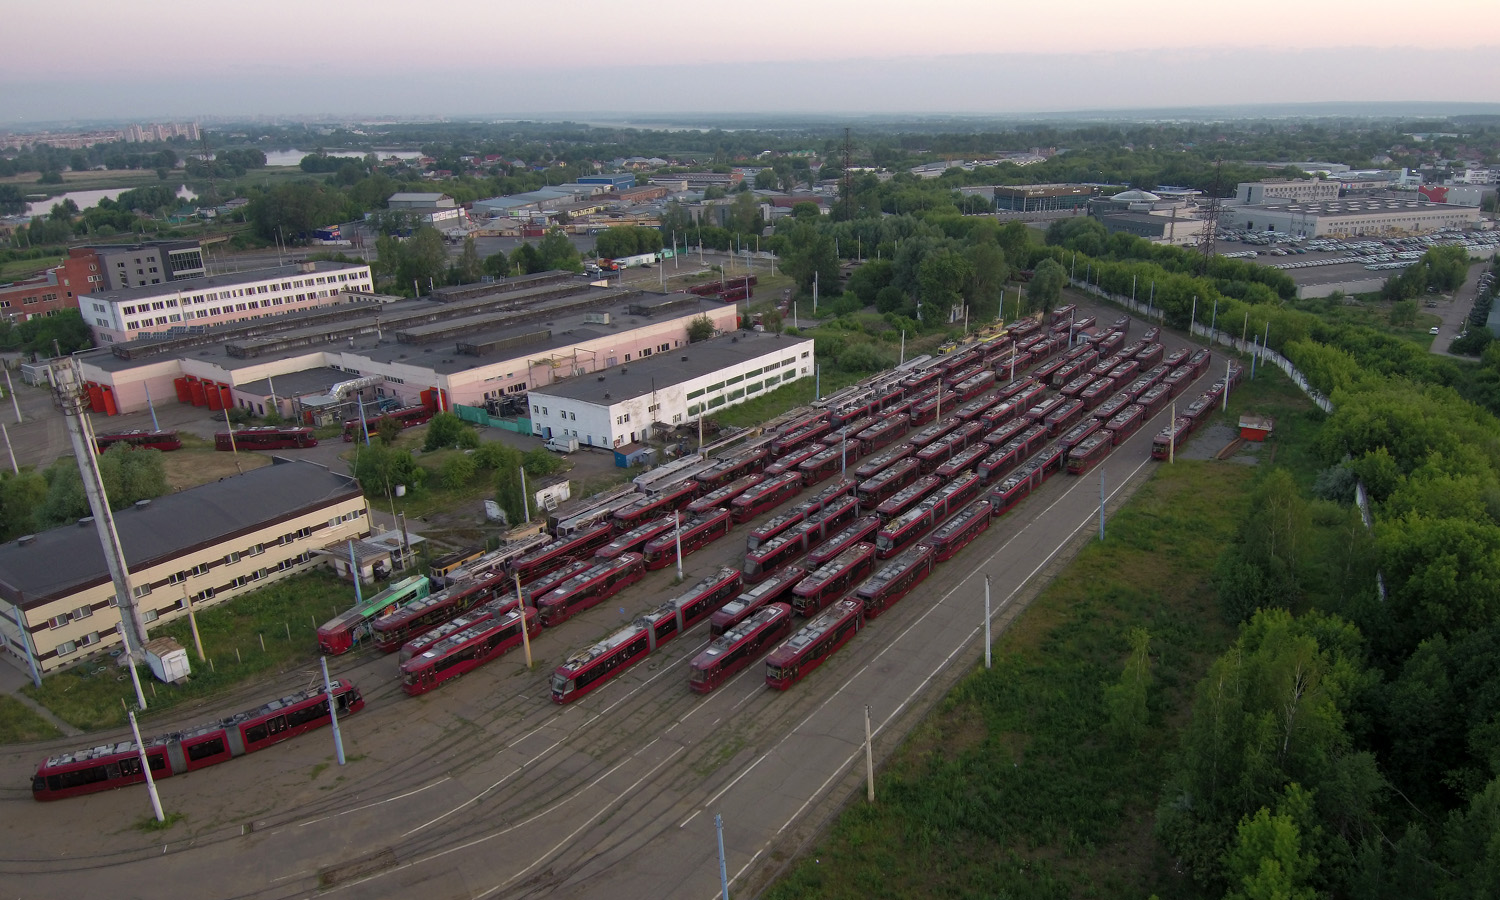 Kazanė — Kabushkin tram depot; Kazanė — Photos from a height